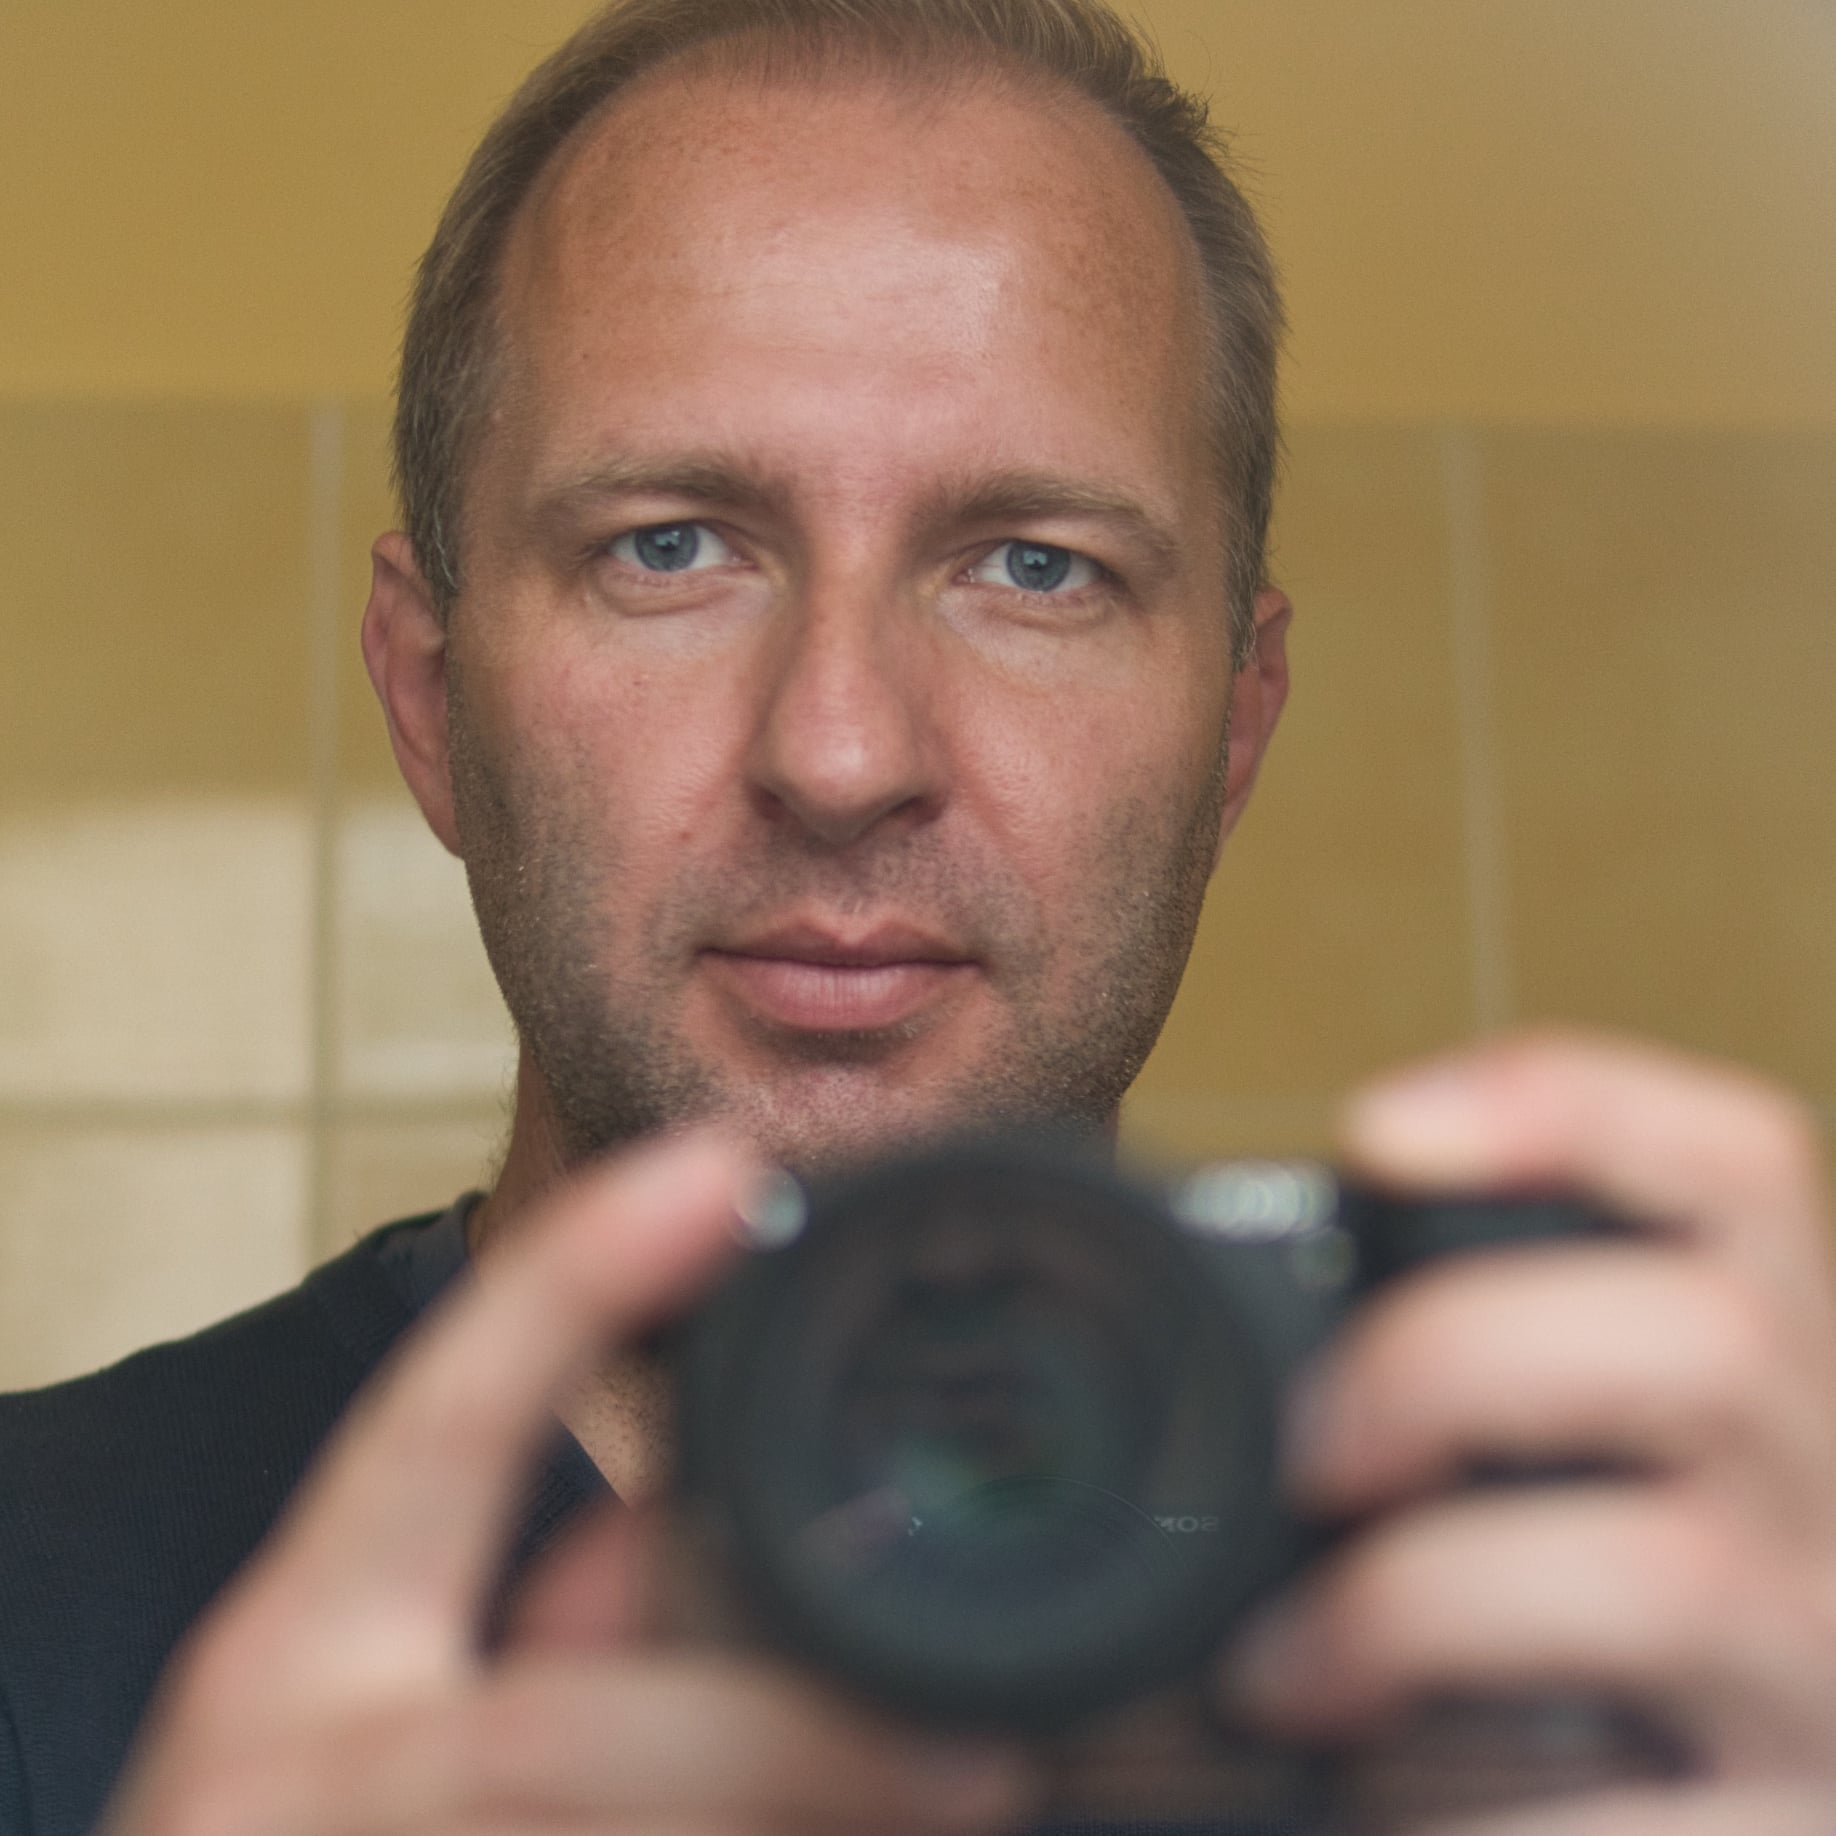 3. Self portrait foto Jan Zitniak